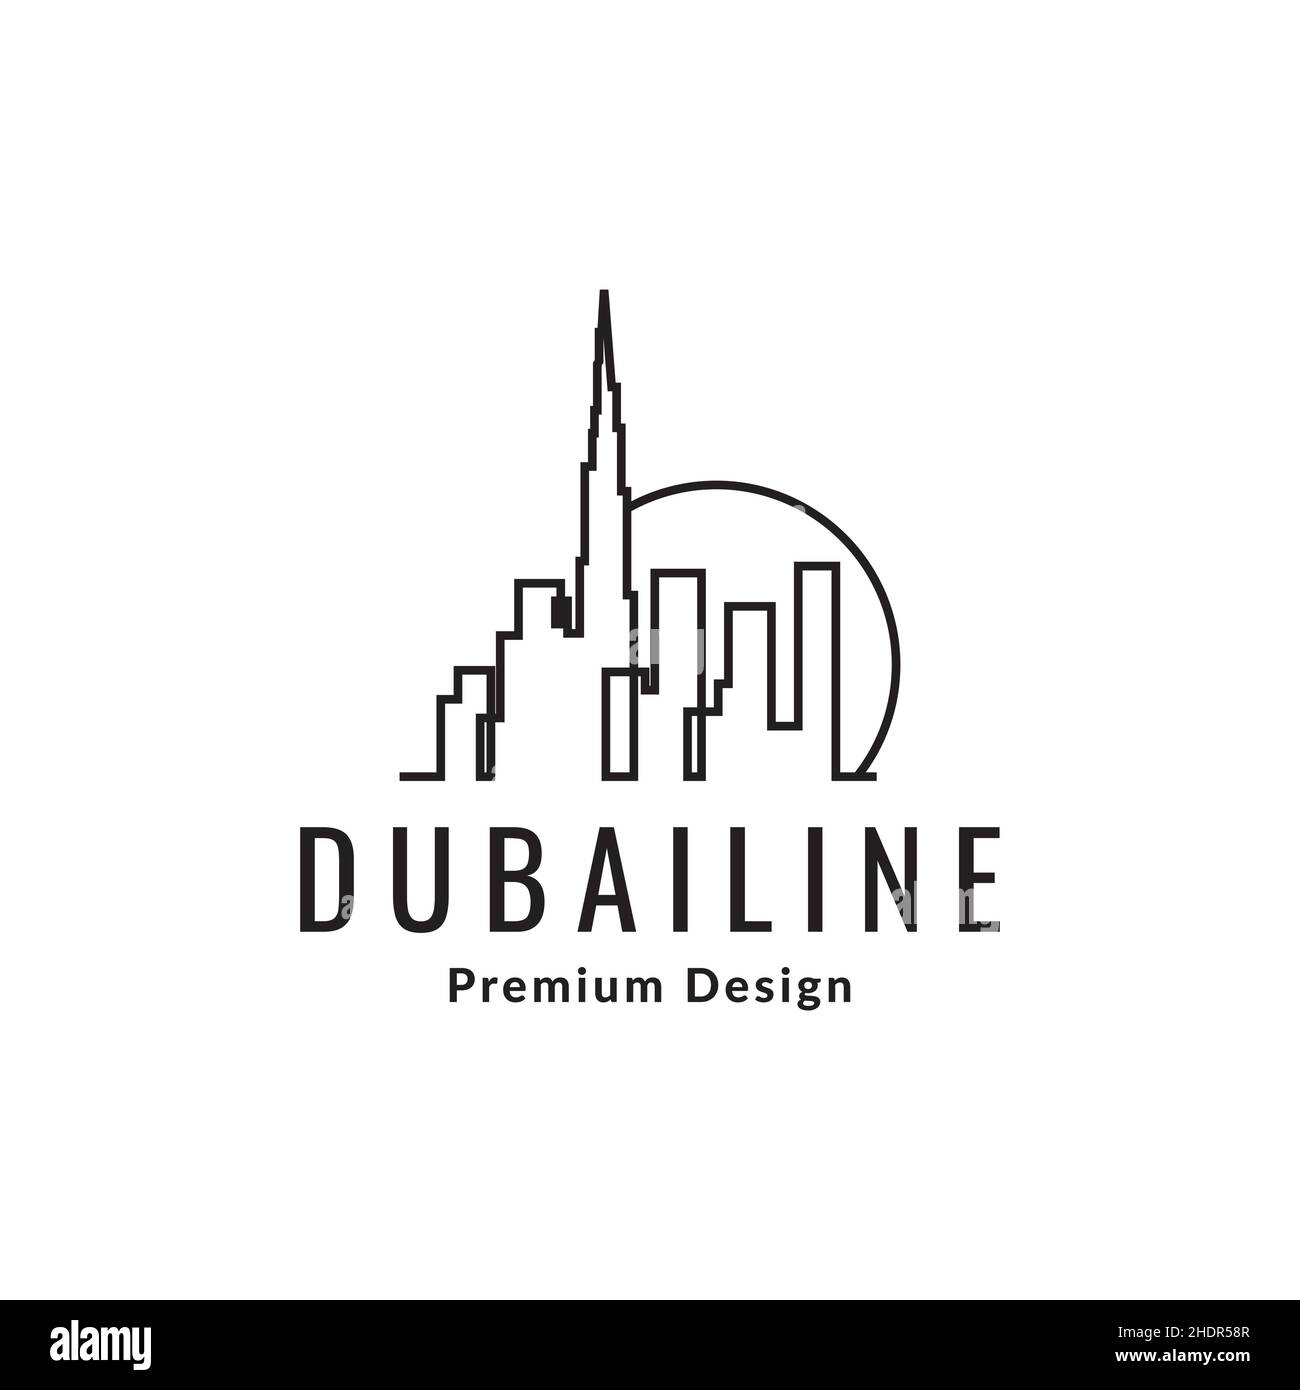 continuous line dubai city building logo design vector graphic symbol icon illustration creative idea Stock Vector